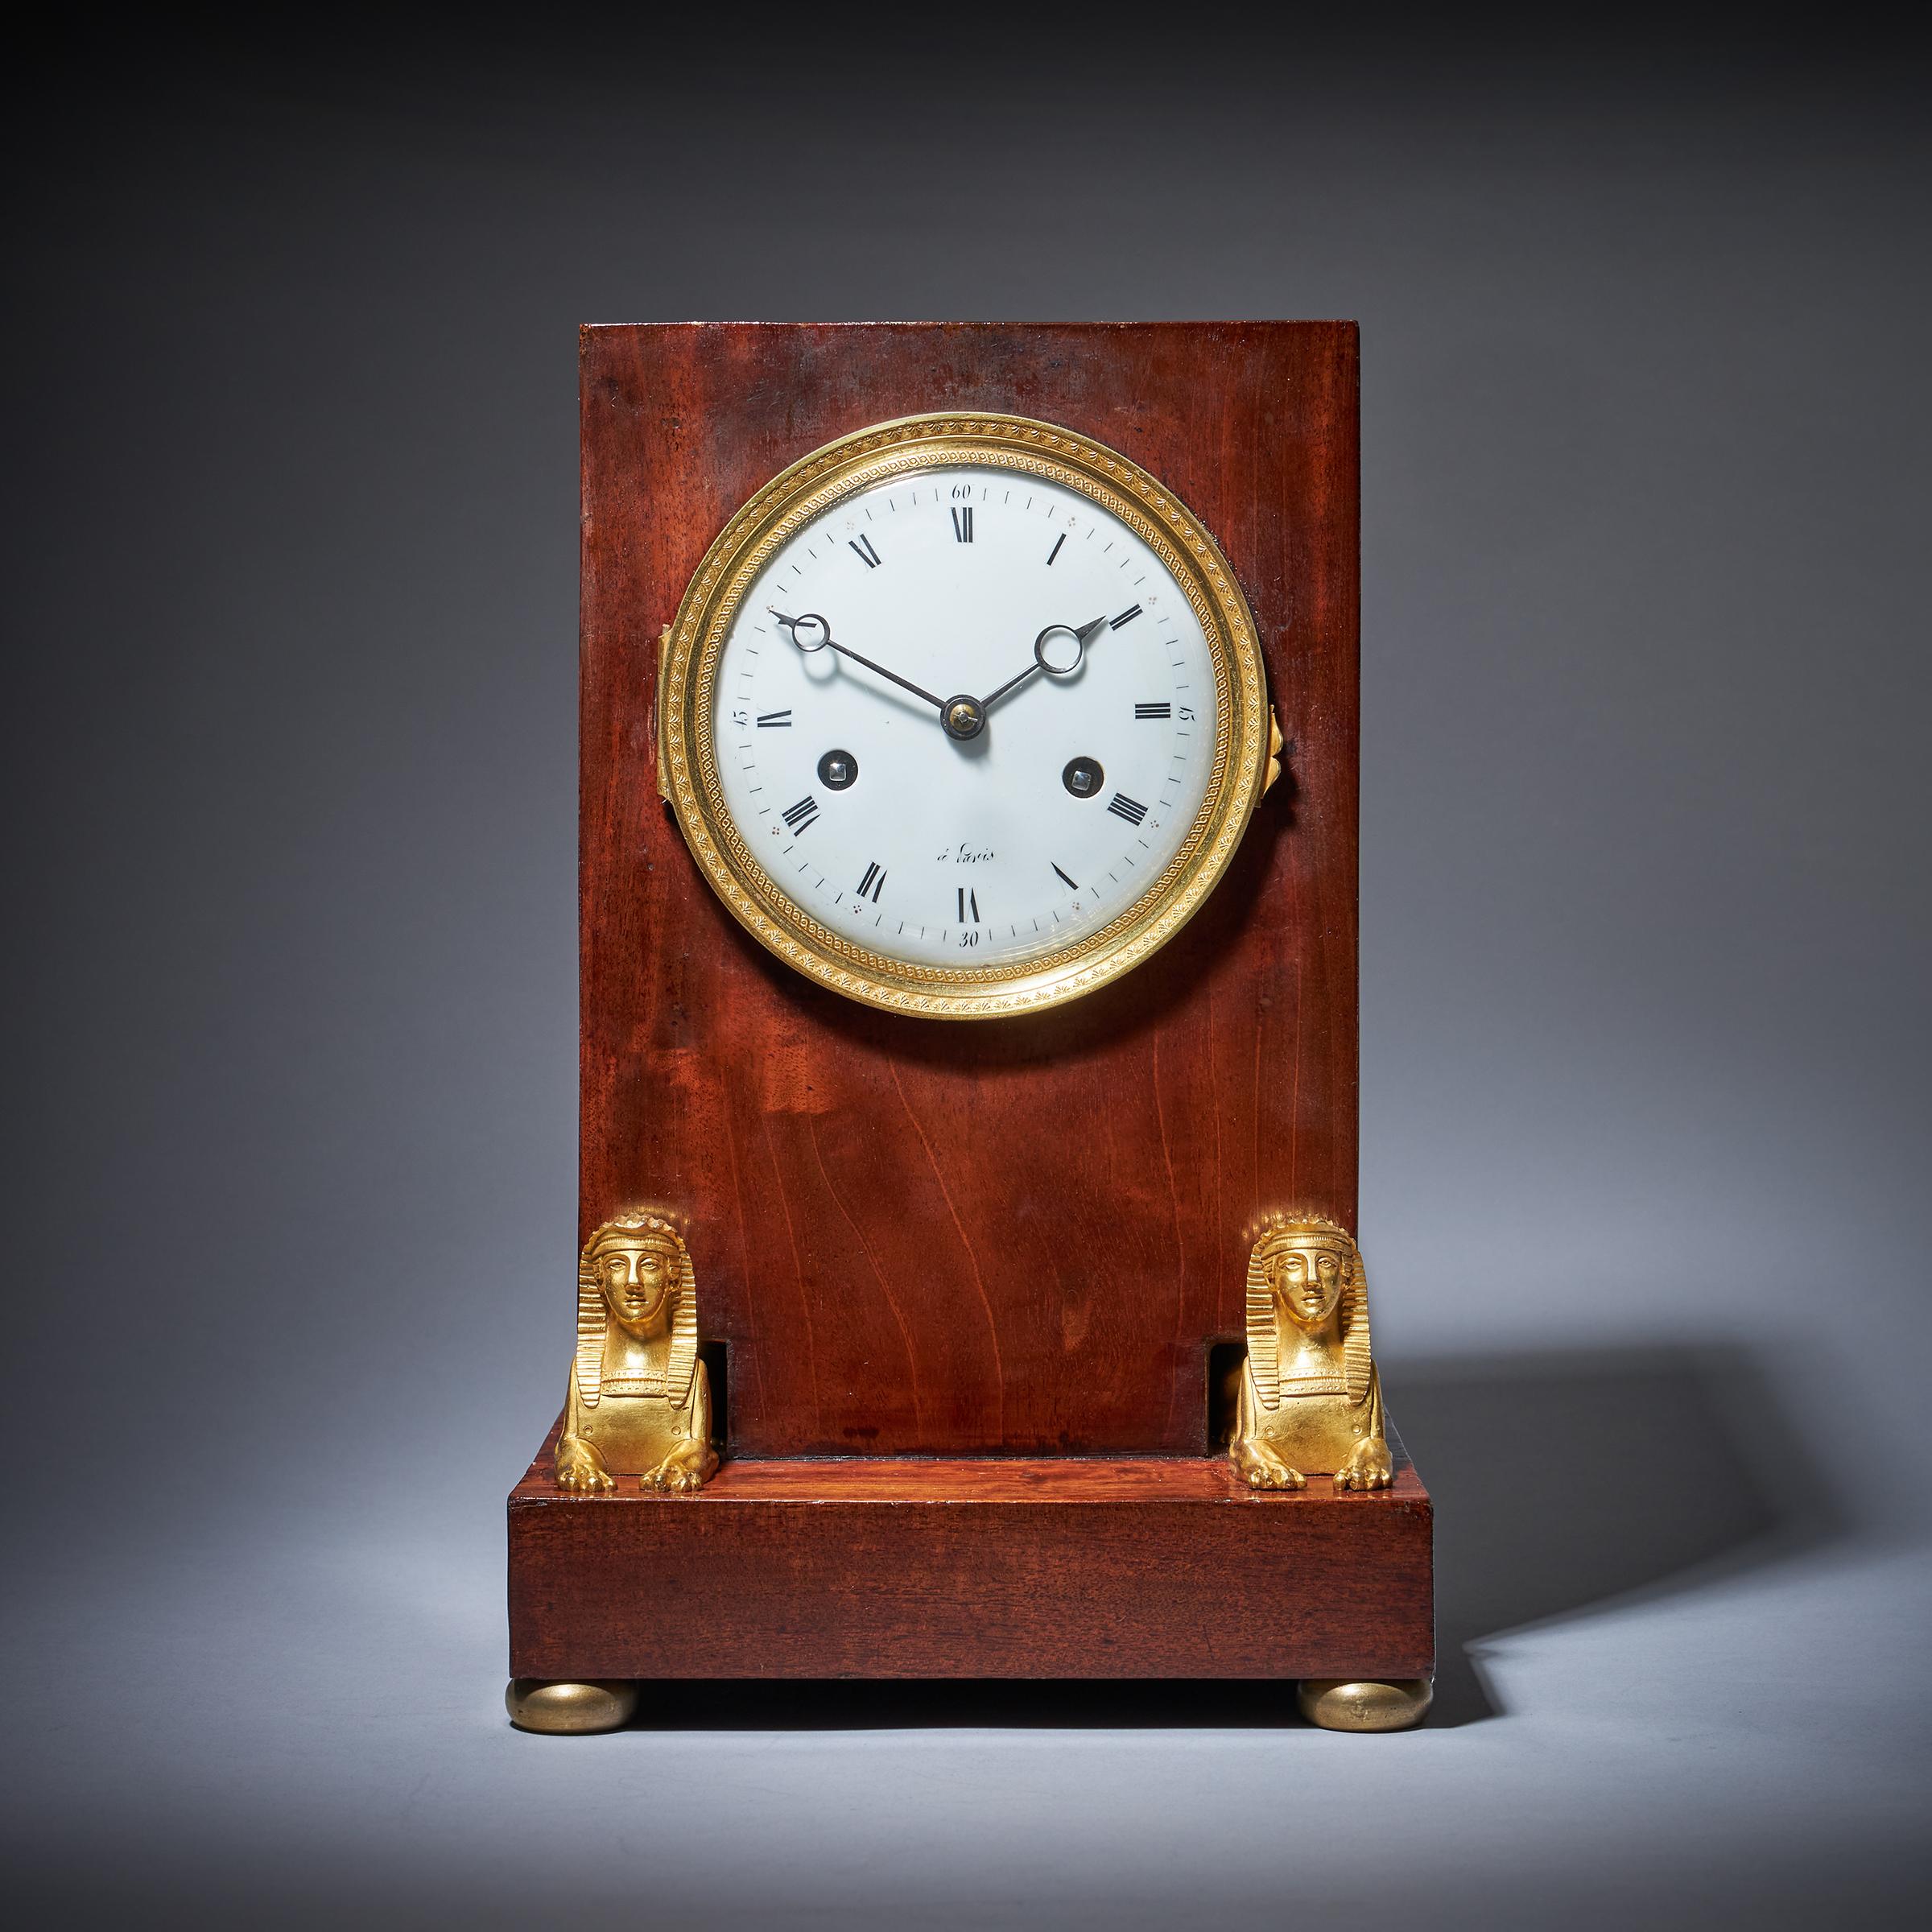 Superbe horloge de cheminée du 19e siècle en acajou flammé d'époque Napoléon Empire, de style égyptien.

Cette horloge a été produite à l'époque de l'Empire français, dans le premier quart du XIXe siècle. La campagne de Napoléon en Égypte a suscité